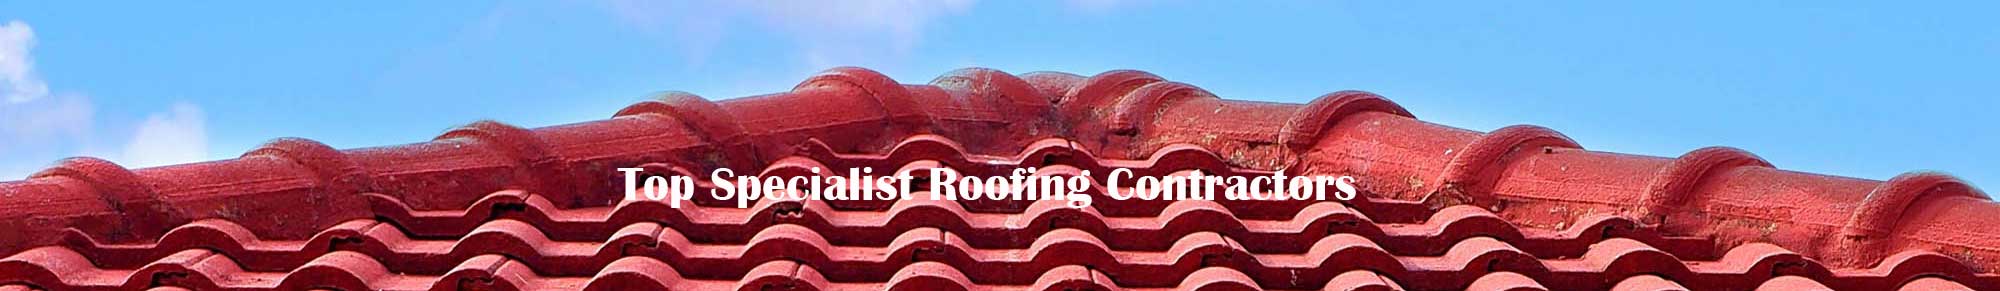 Specialist Roofing Contractors